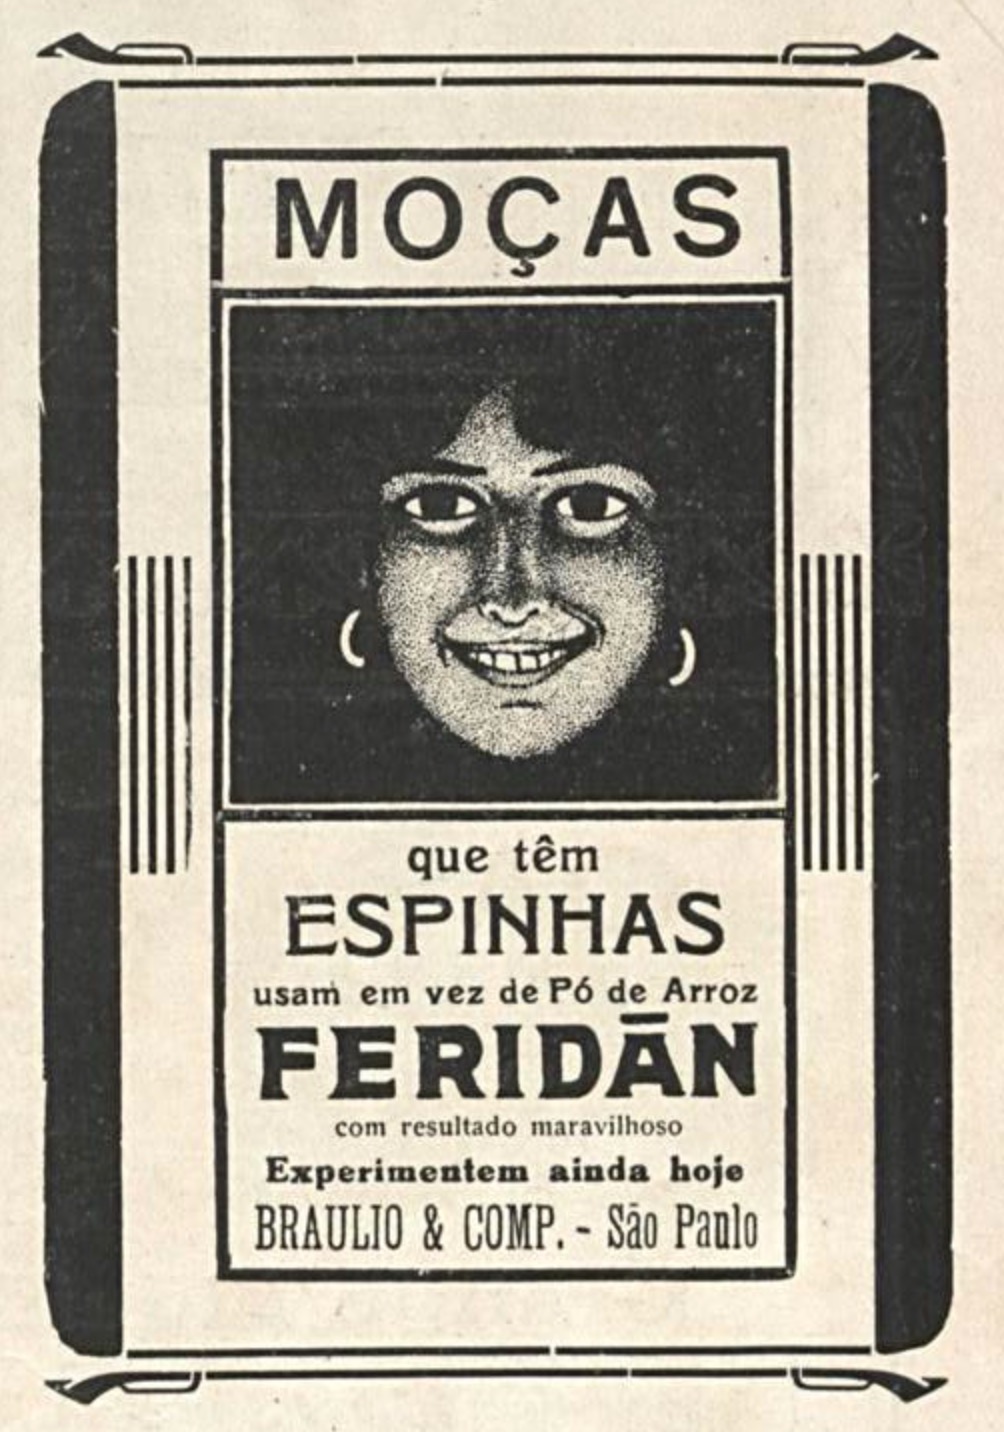 Anúncio veiculado em 1918 promovendo o Feridan para combater espinhas nas moças